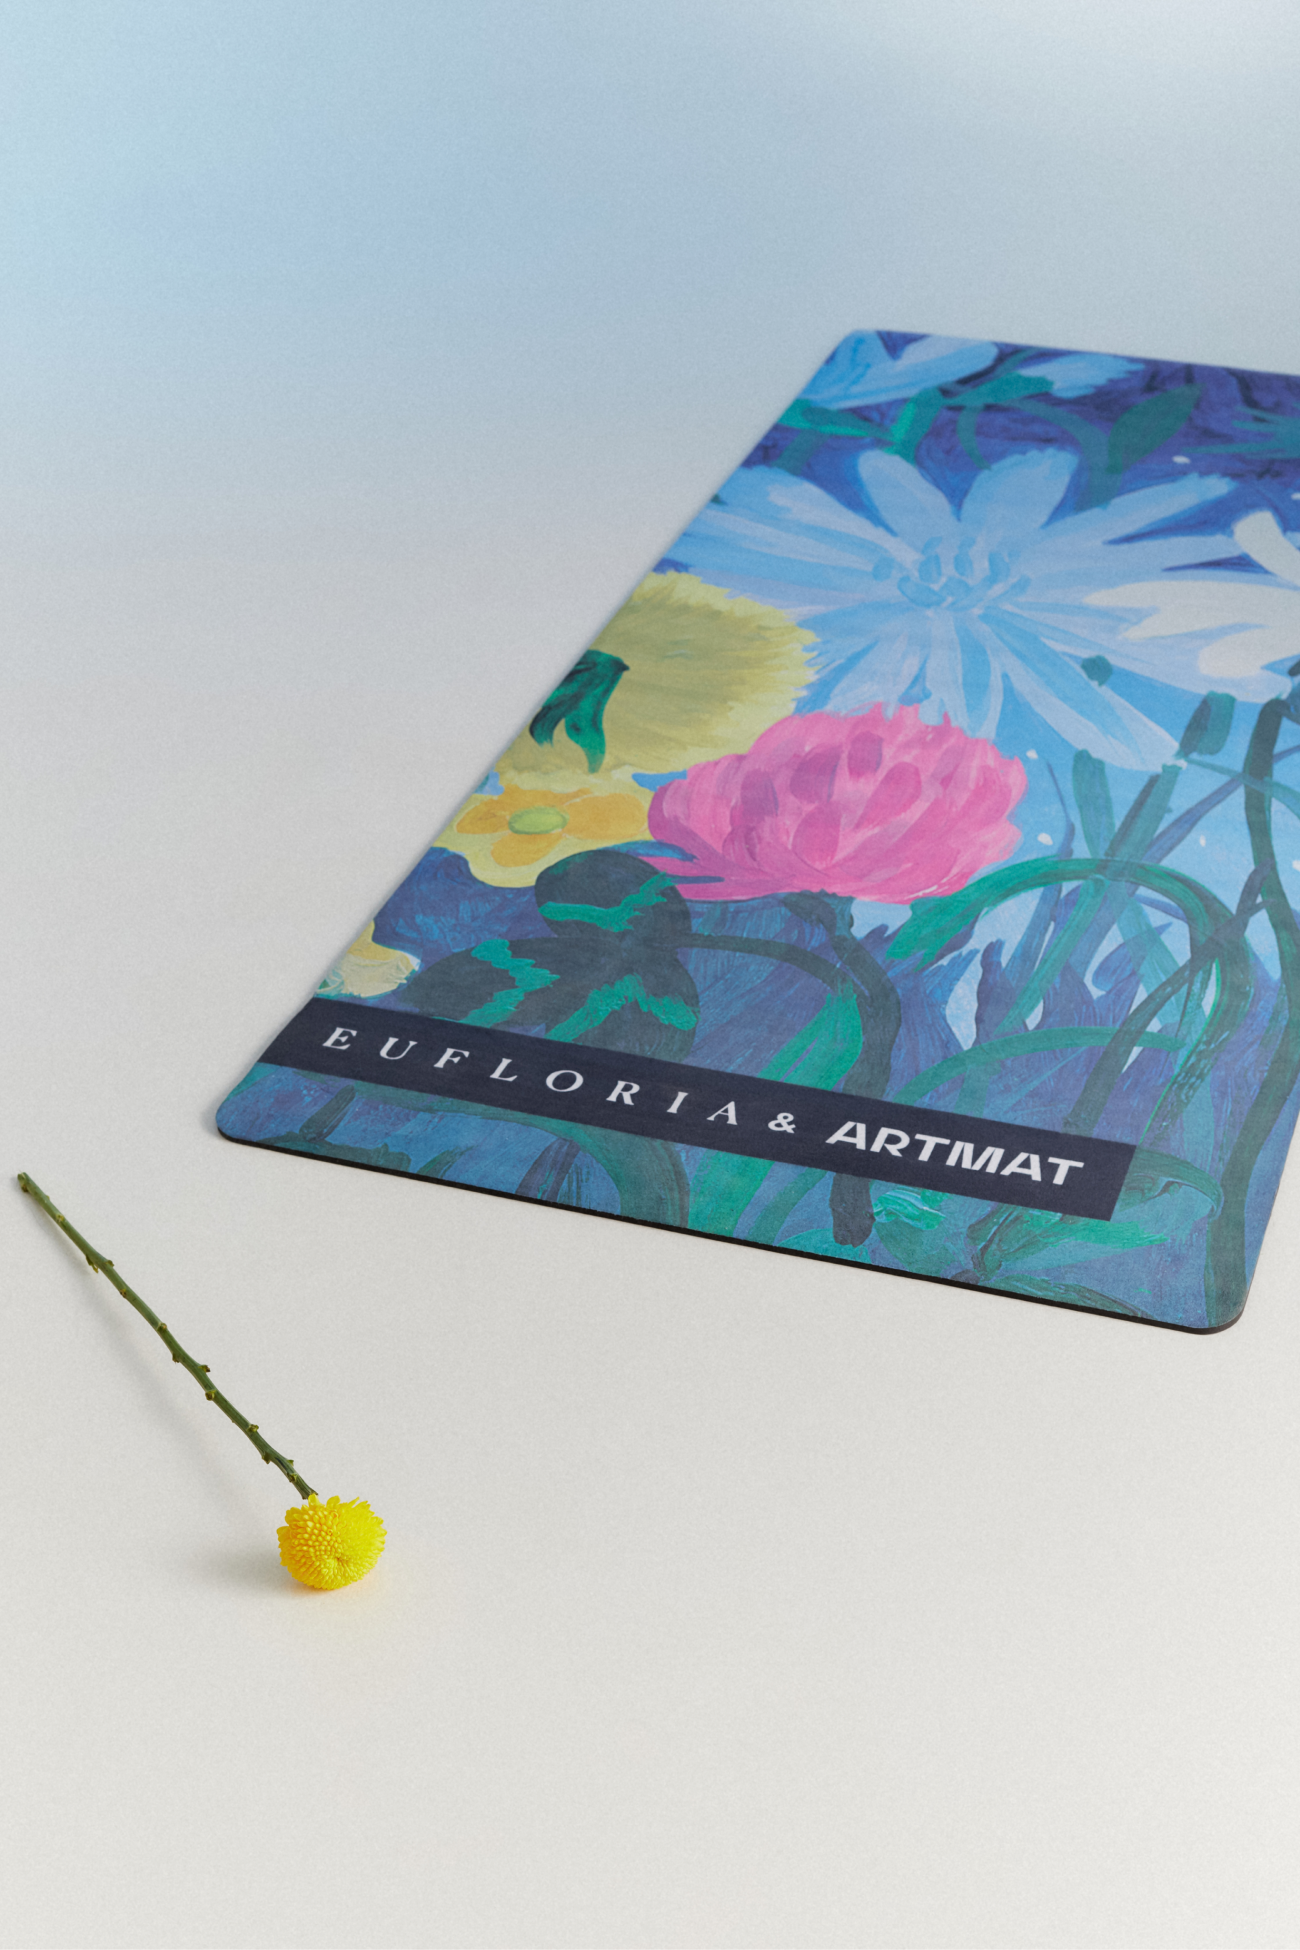 Бренд Artmat и флористическая арт-галерея Eufloria выпустили коврик для йоги (фото 1)